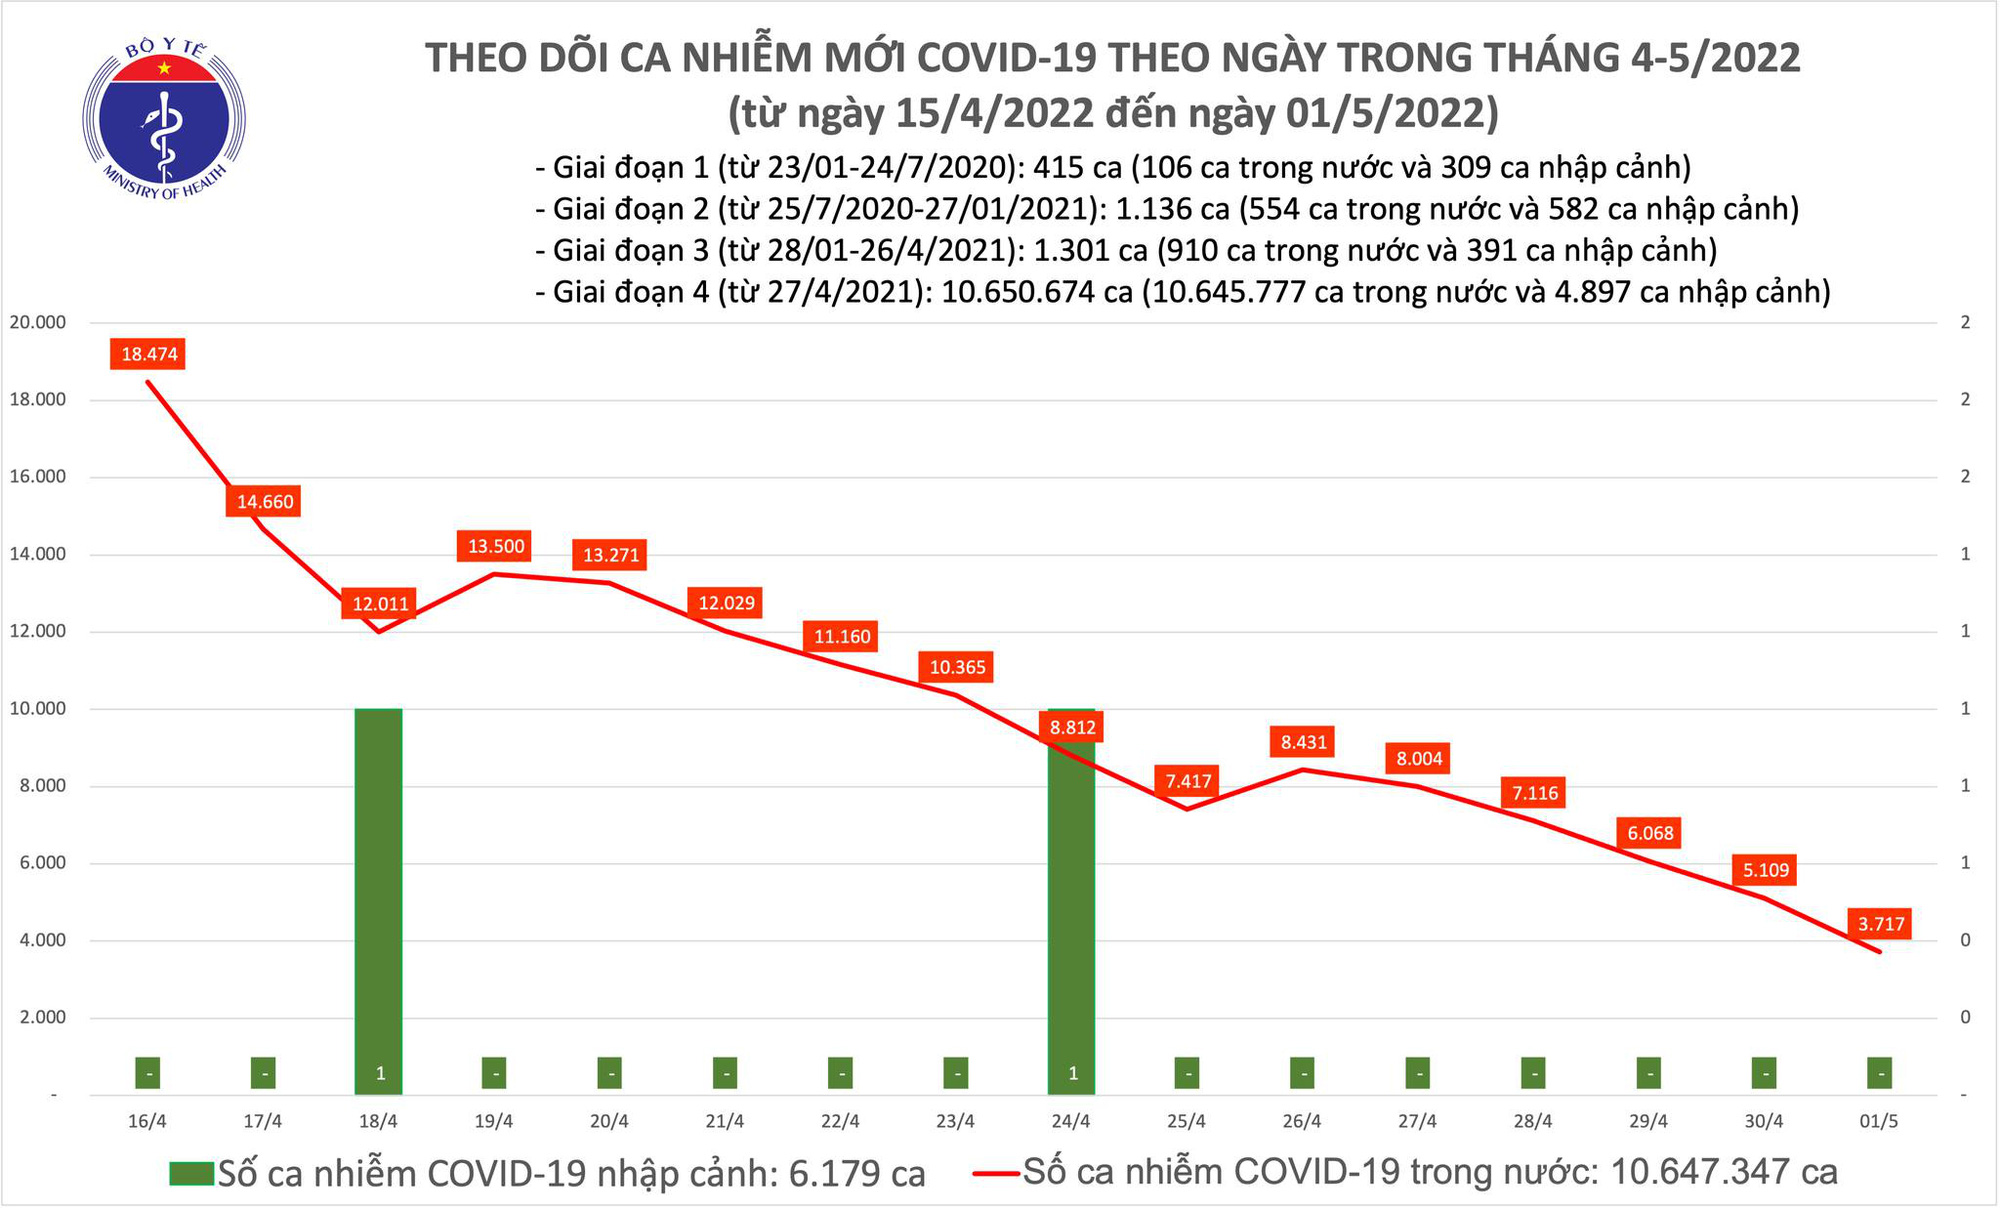 Ngày 1/5: Chỉ còn 3.717 ca COVID-19, giảm xuống thấp nhất trong khoảng 270 ngày qua